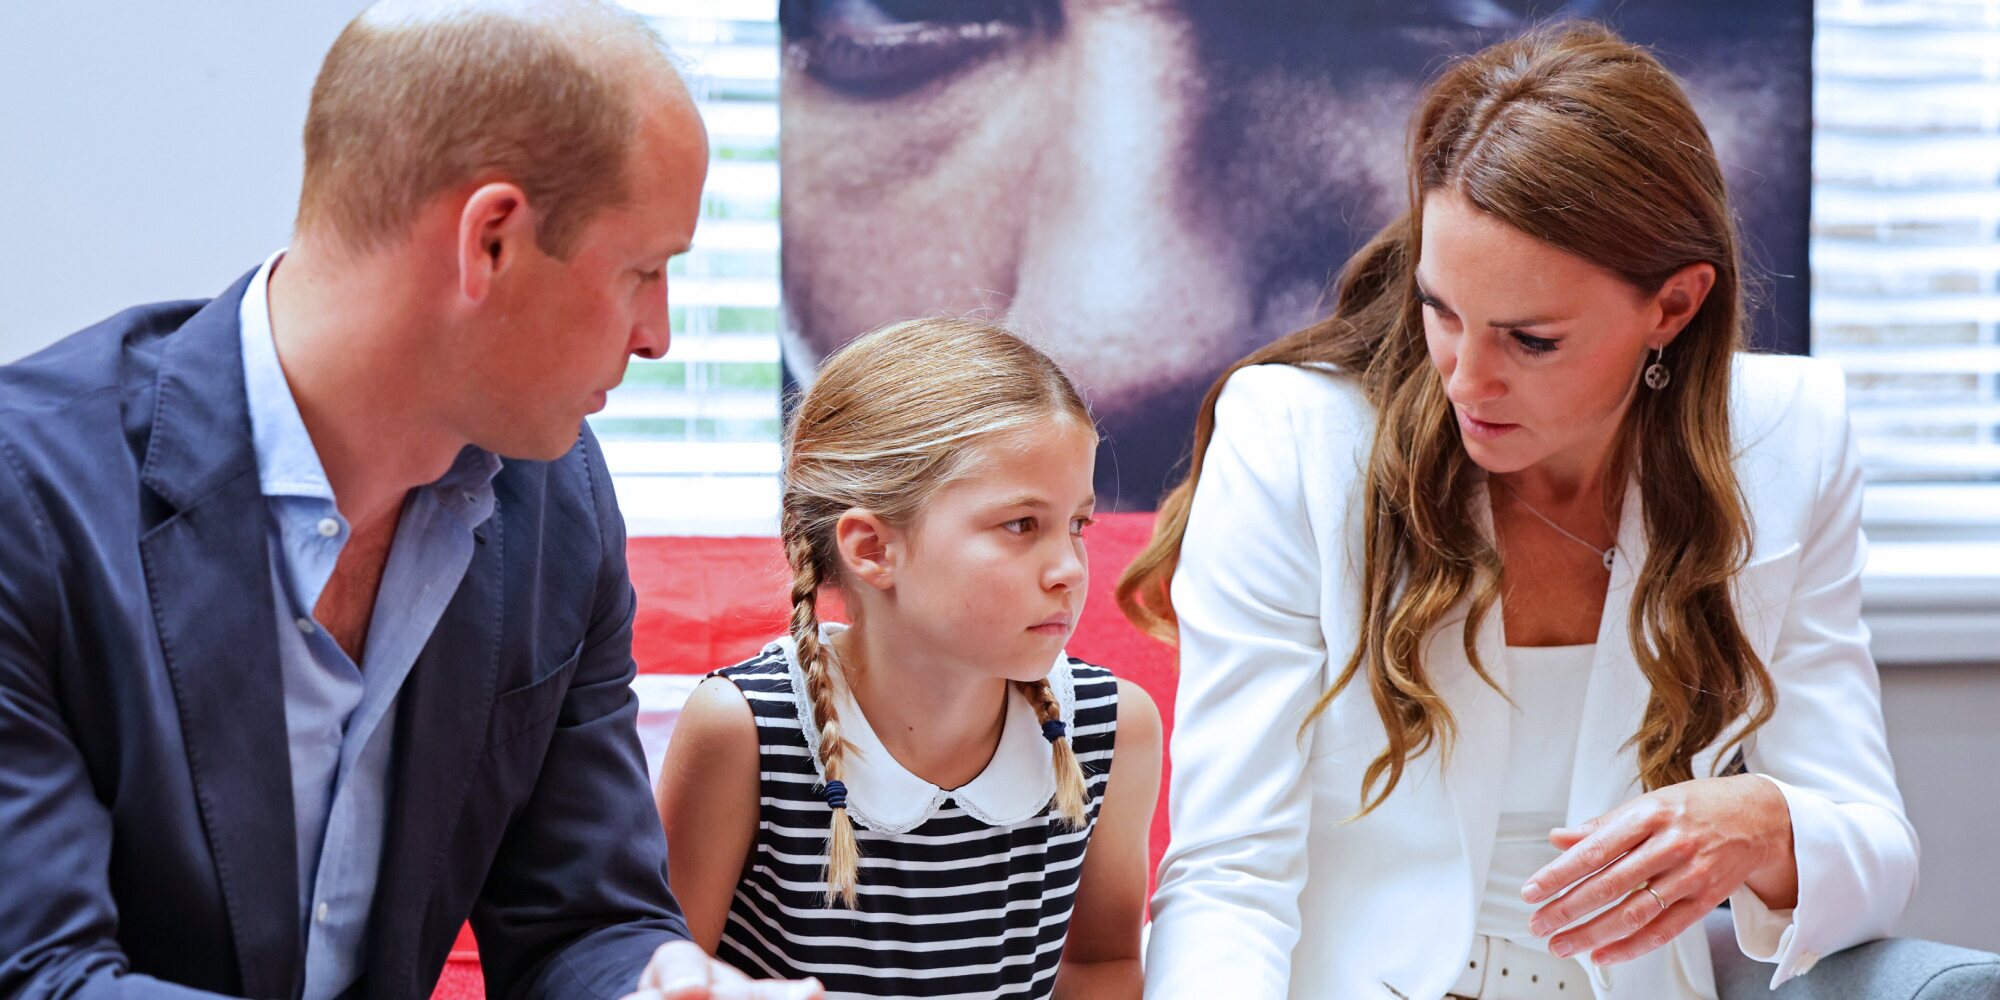 El llamativo gesto de Kate Middleton en los actos oficiales junto al Príncipe Guillermo y la Princesa Charlotte